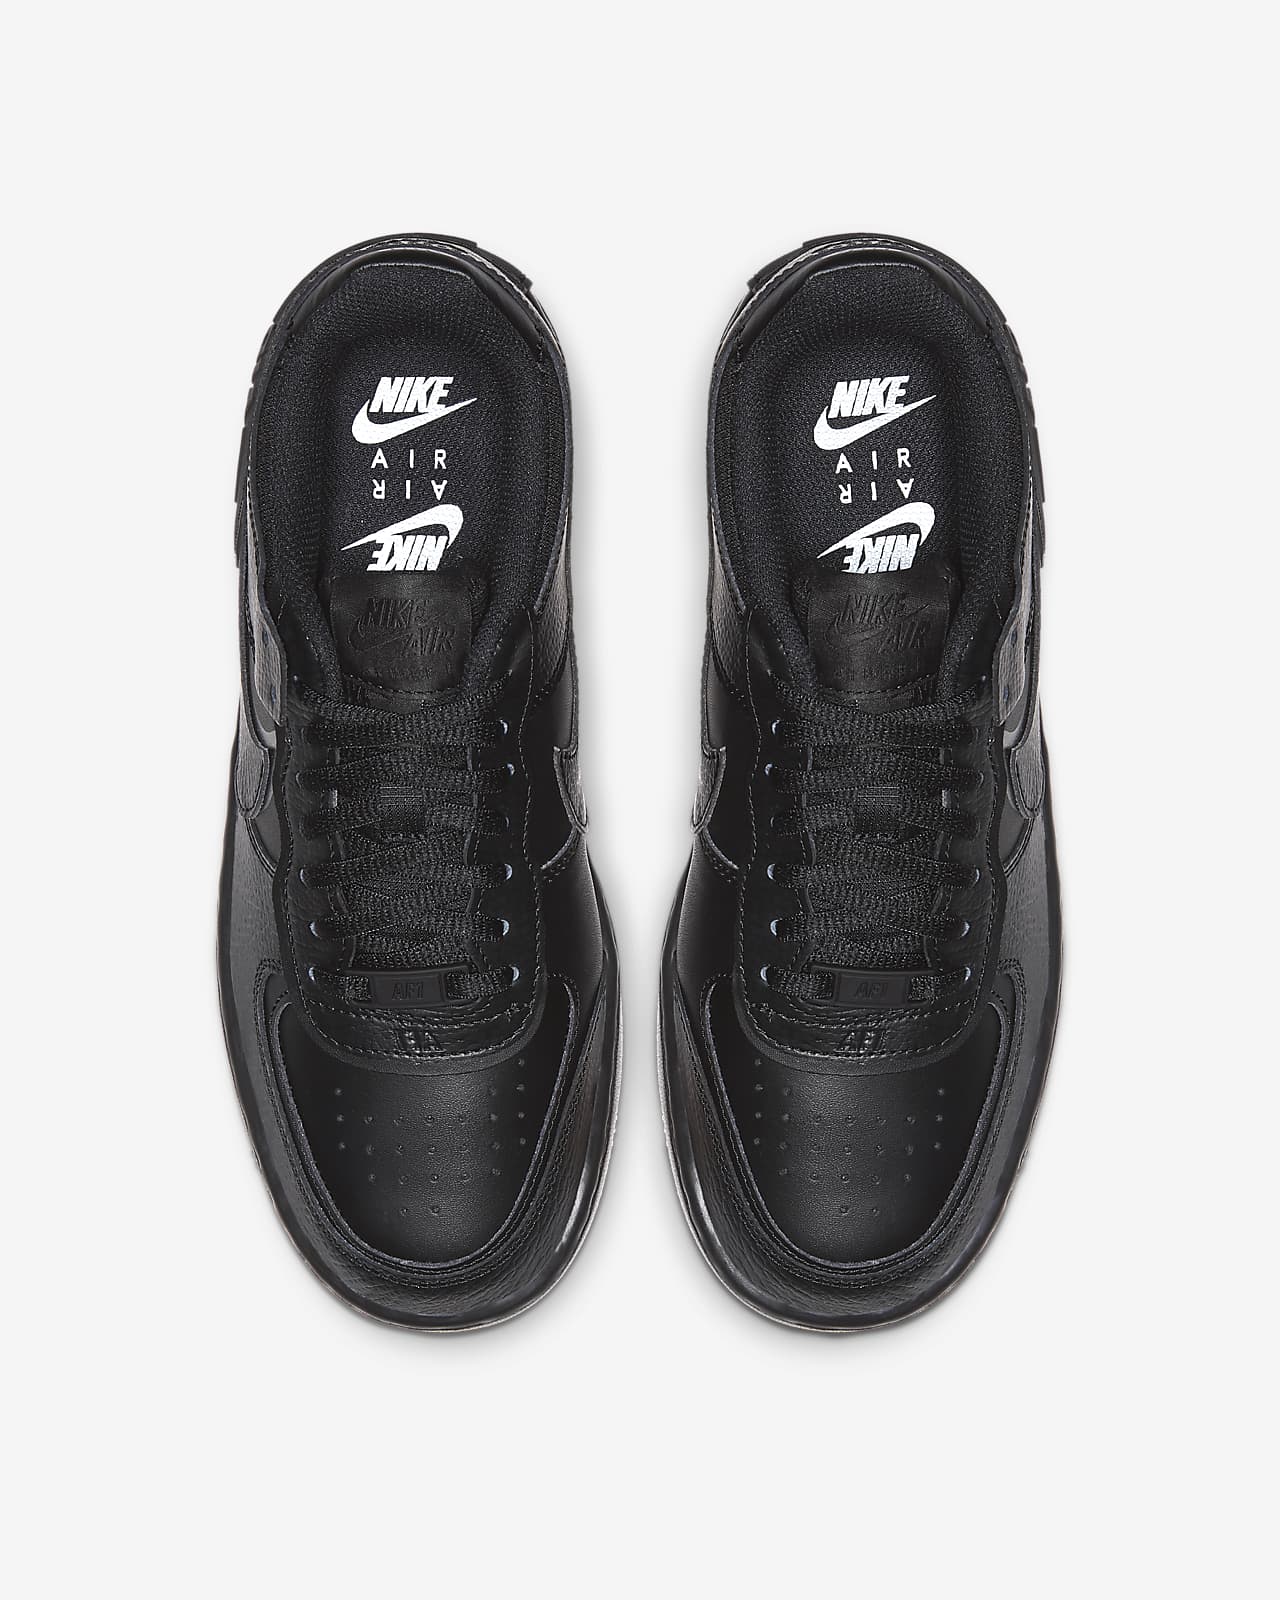 Nike Air Force 1 Shadow Women's Shoe 